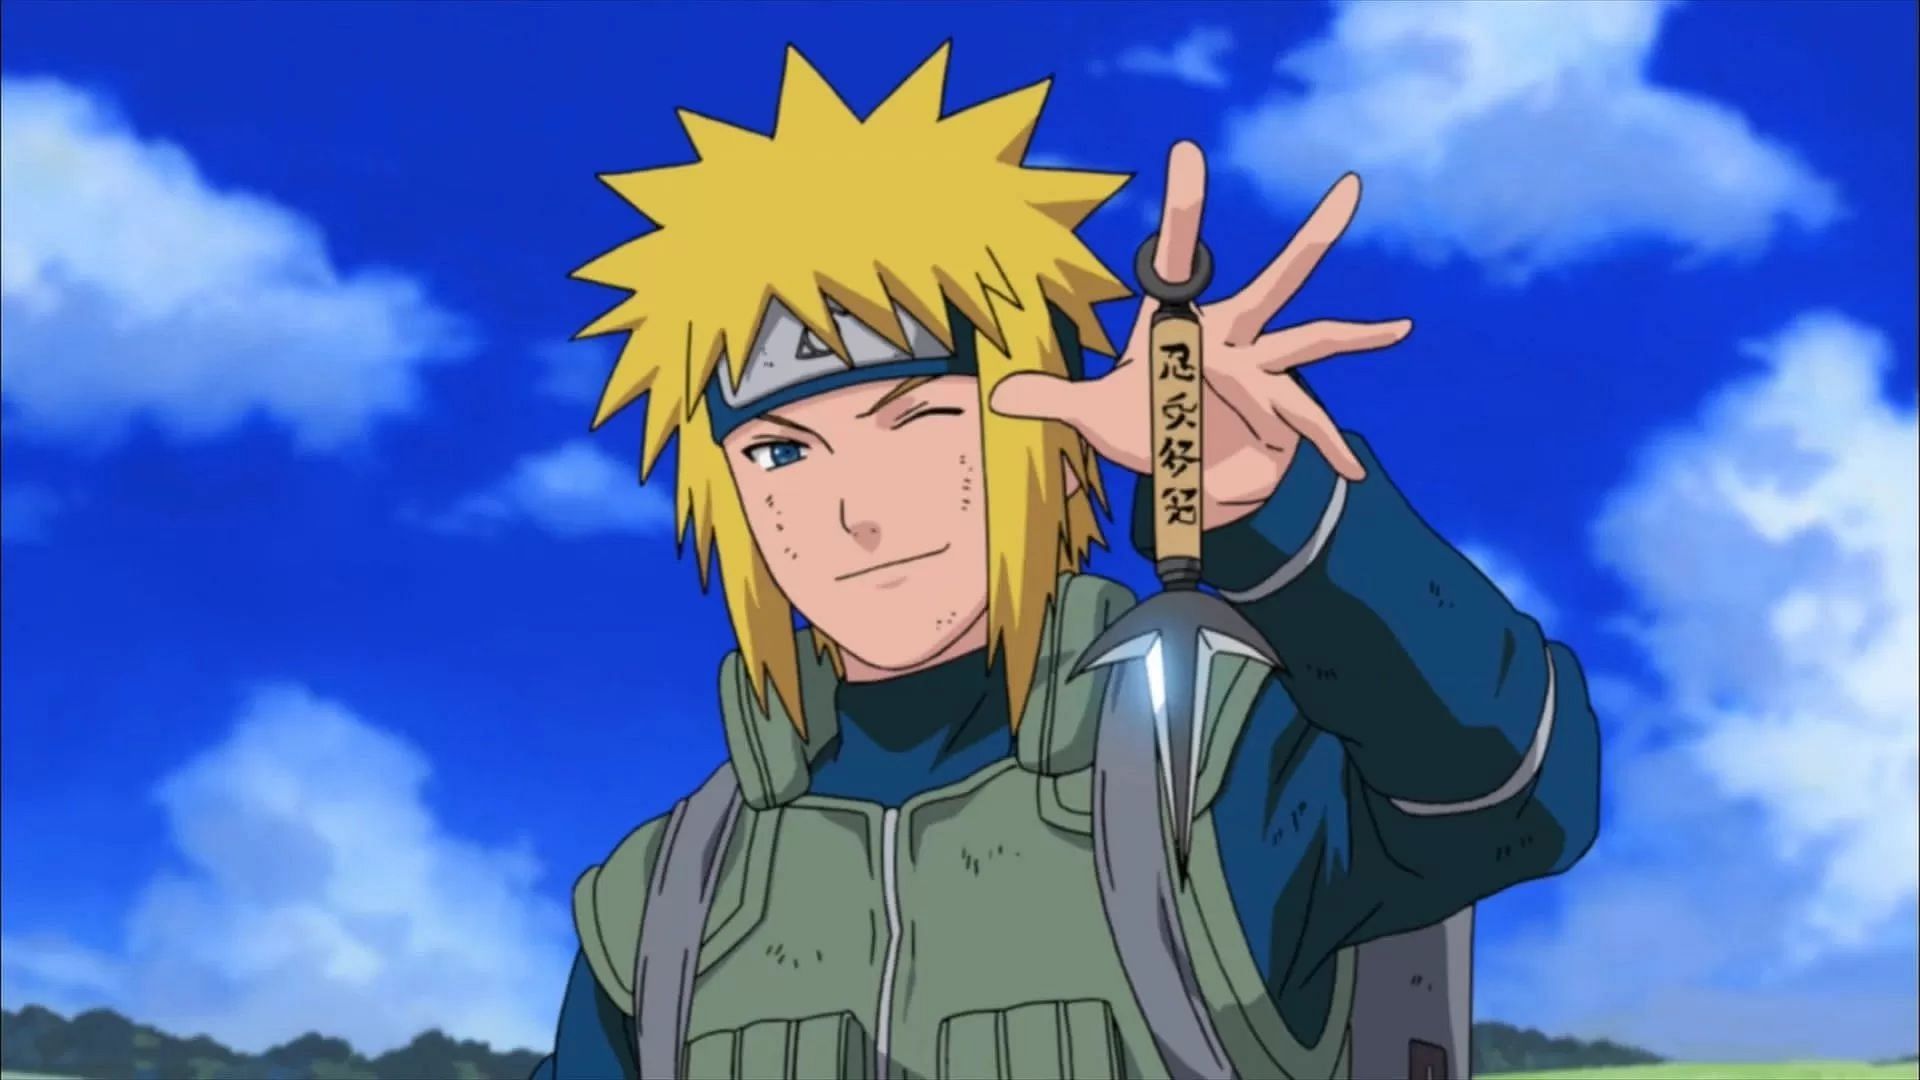 Naruto Character Popularity Polls, Narutopedia